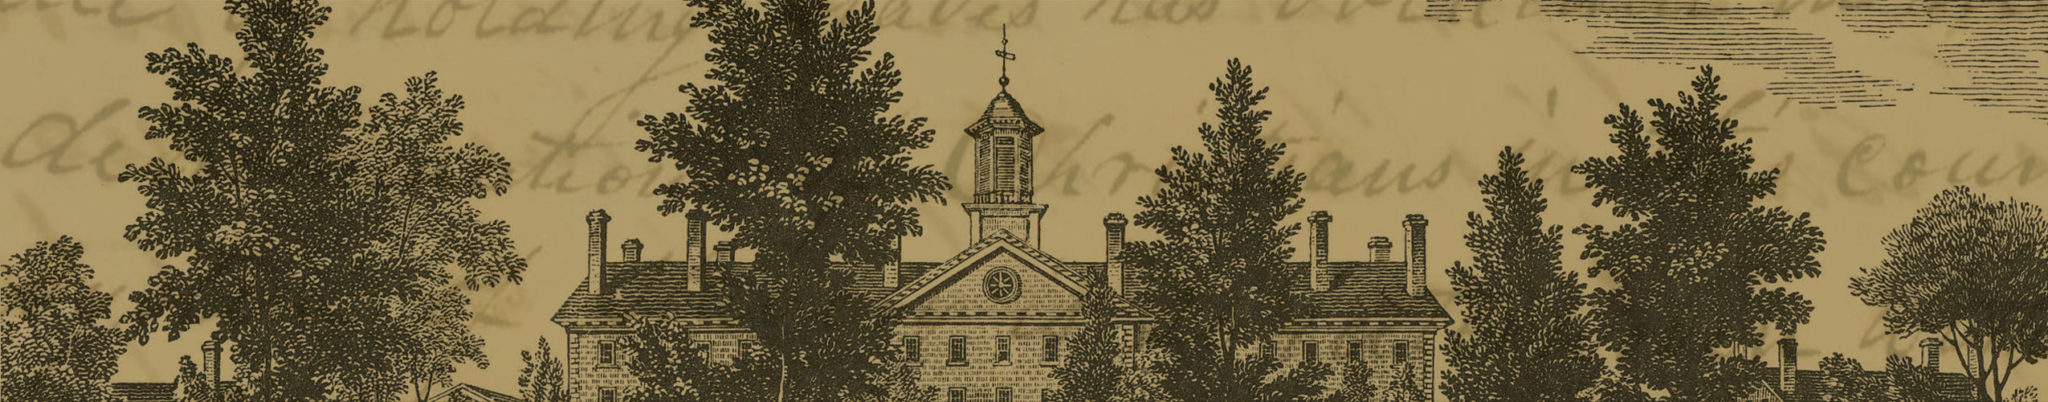 princeton seminary and slavery